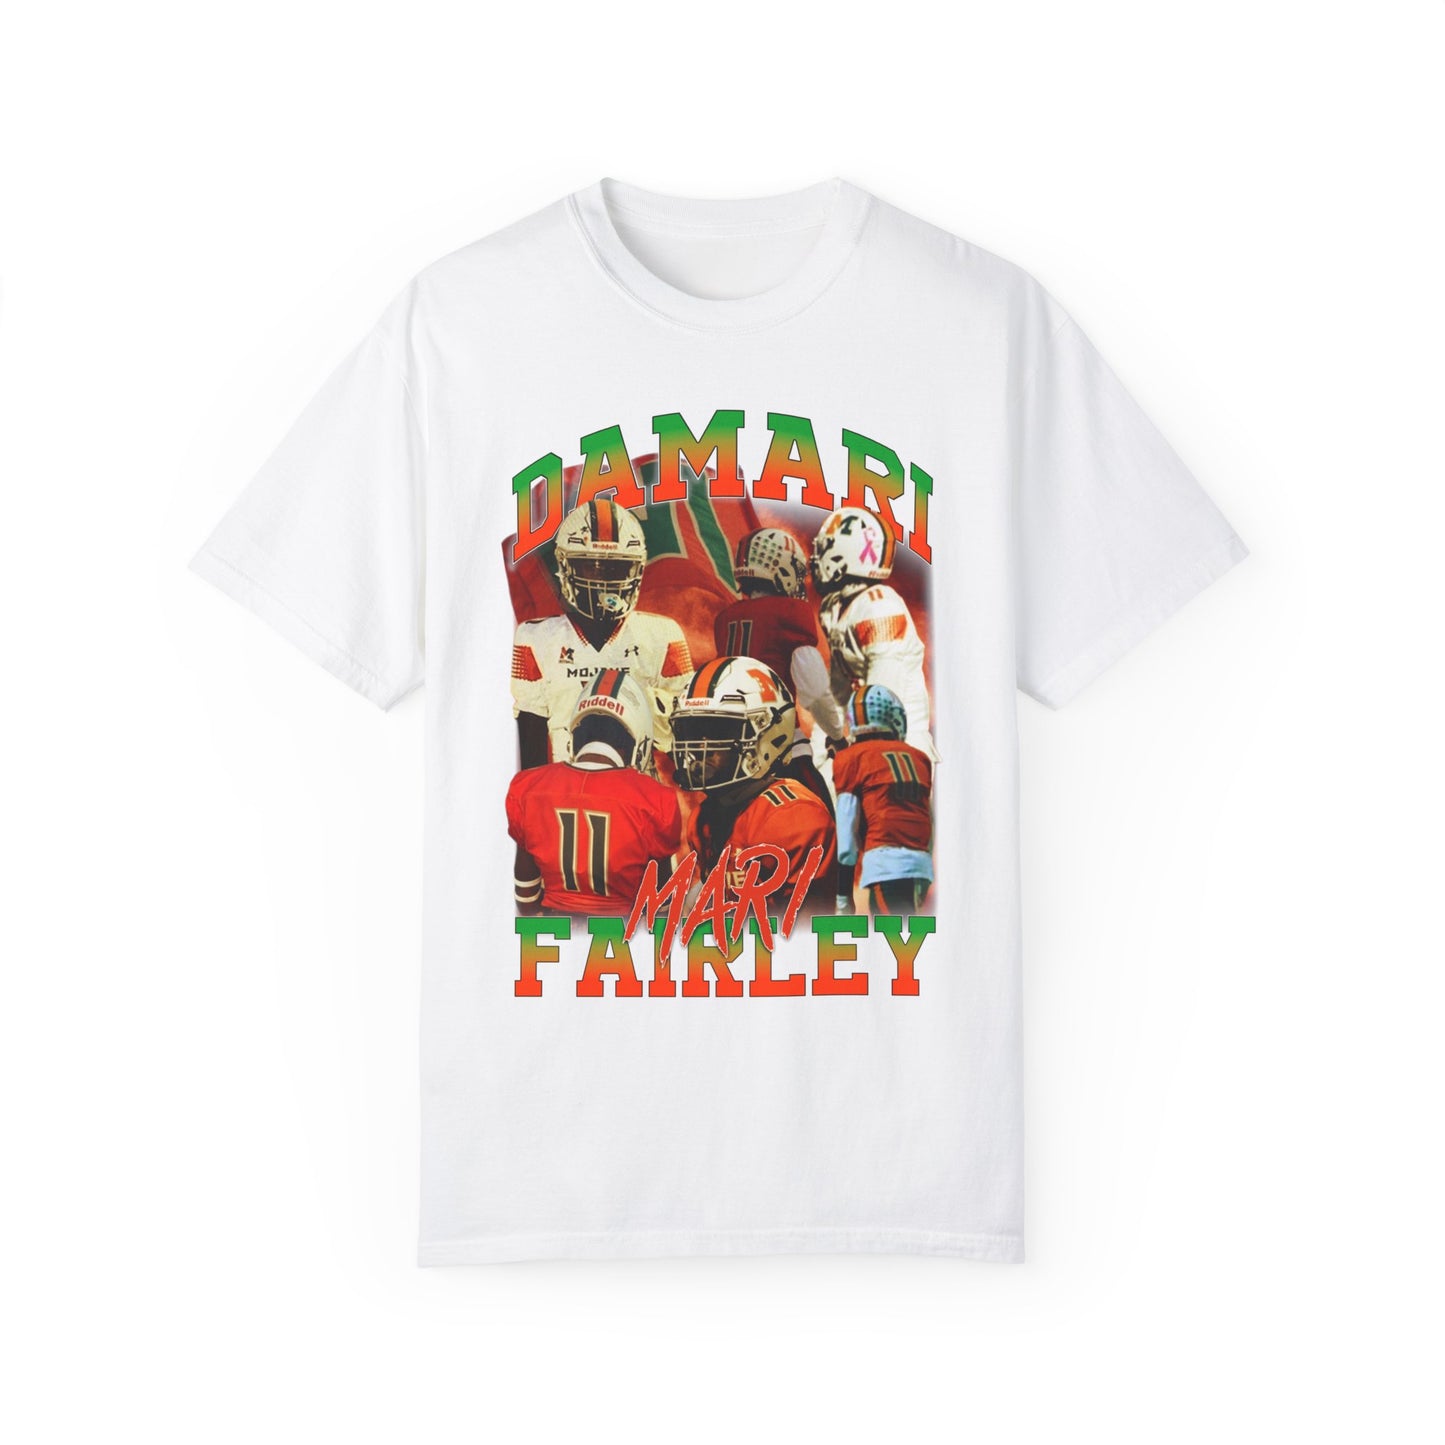 Damari Fairley Graphic T-shirt